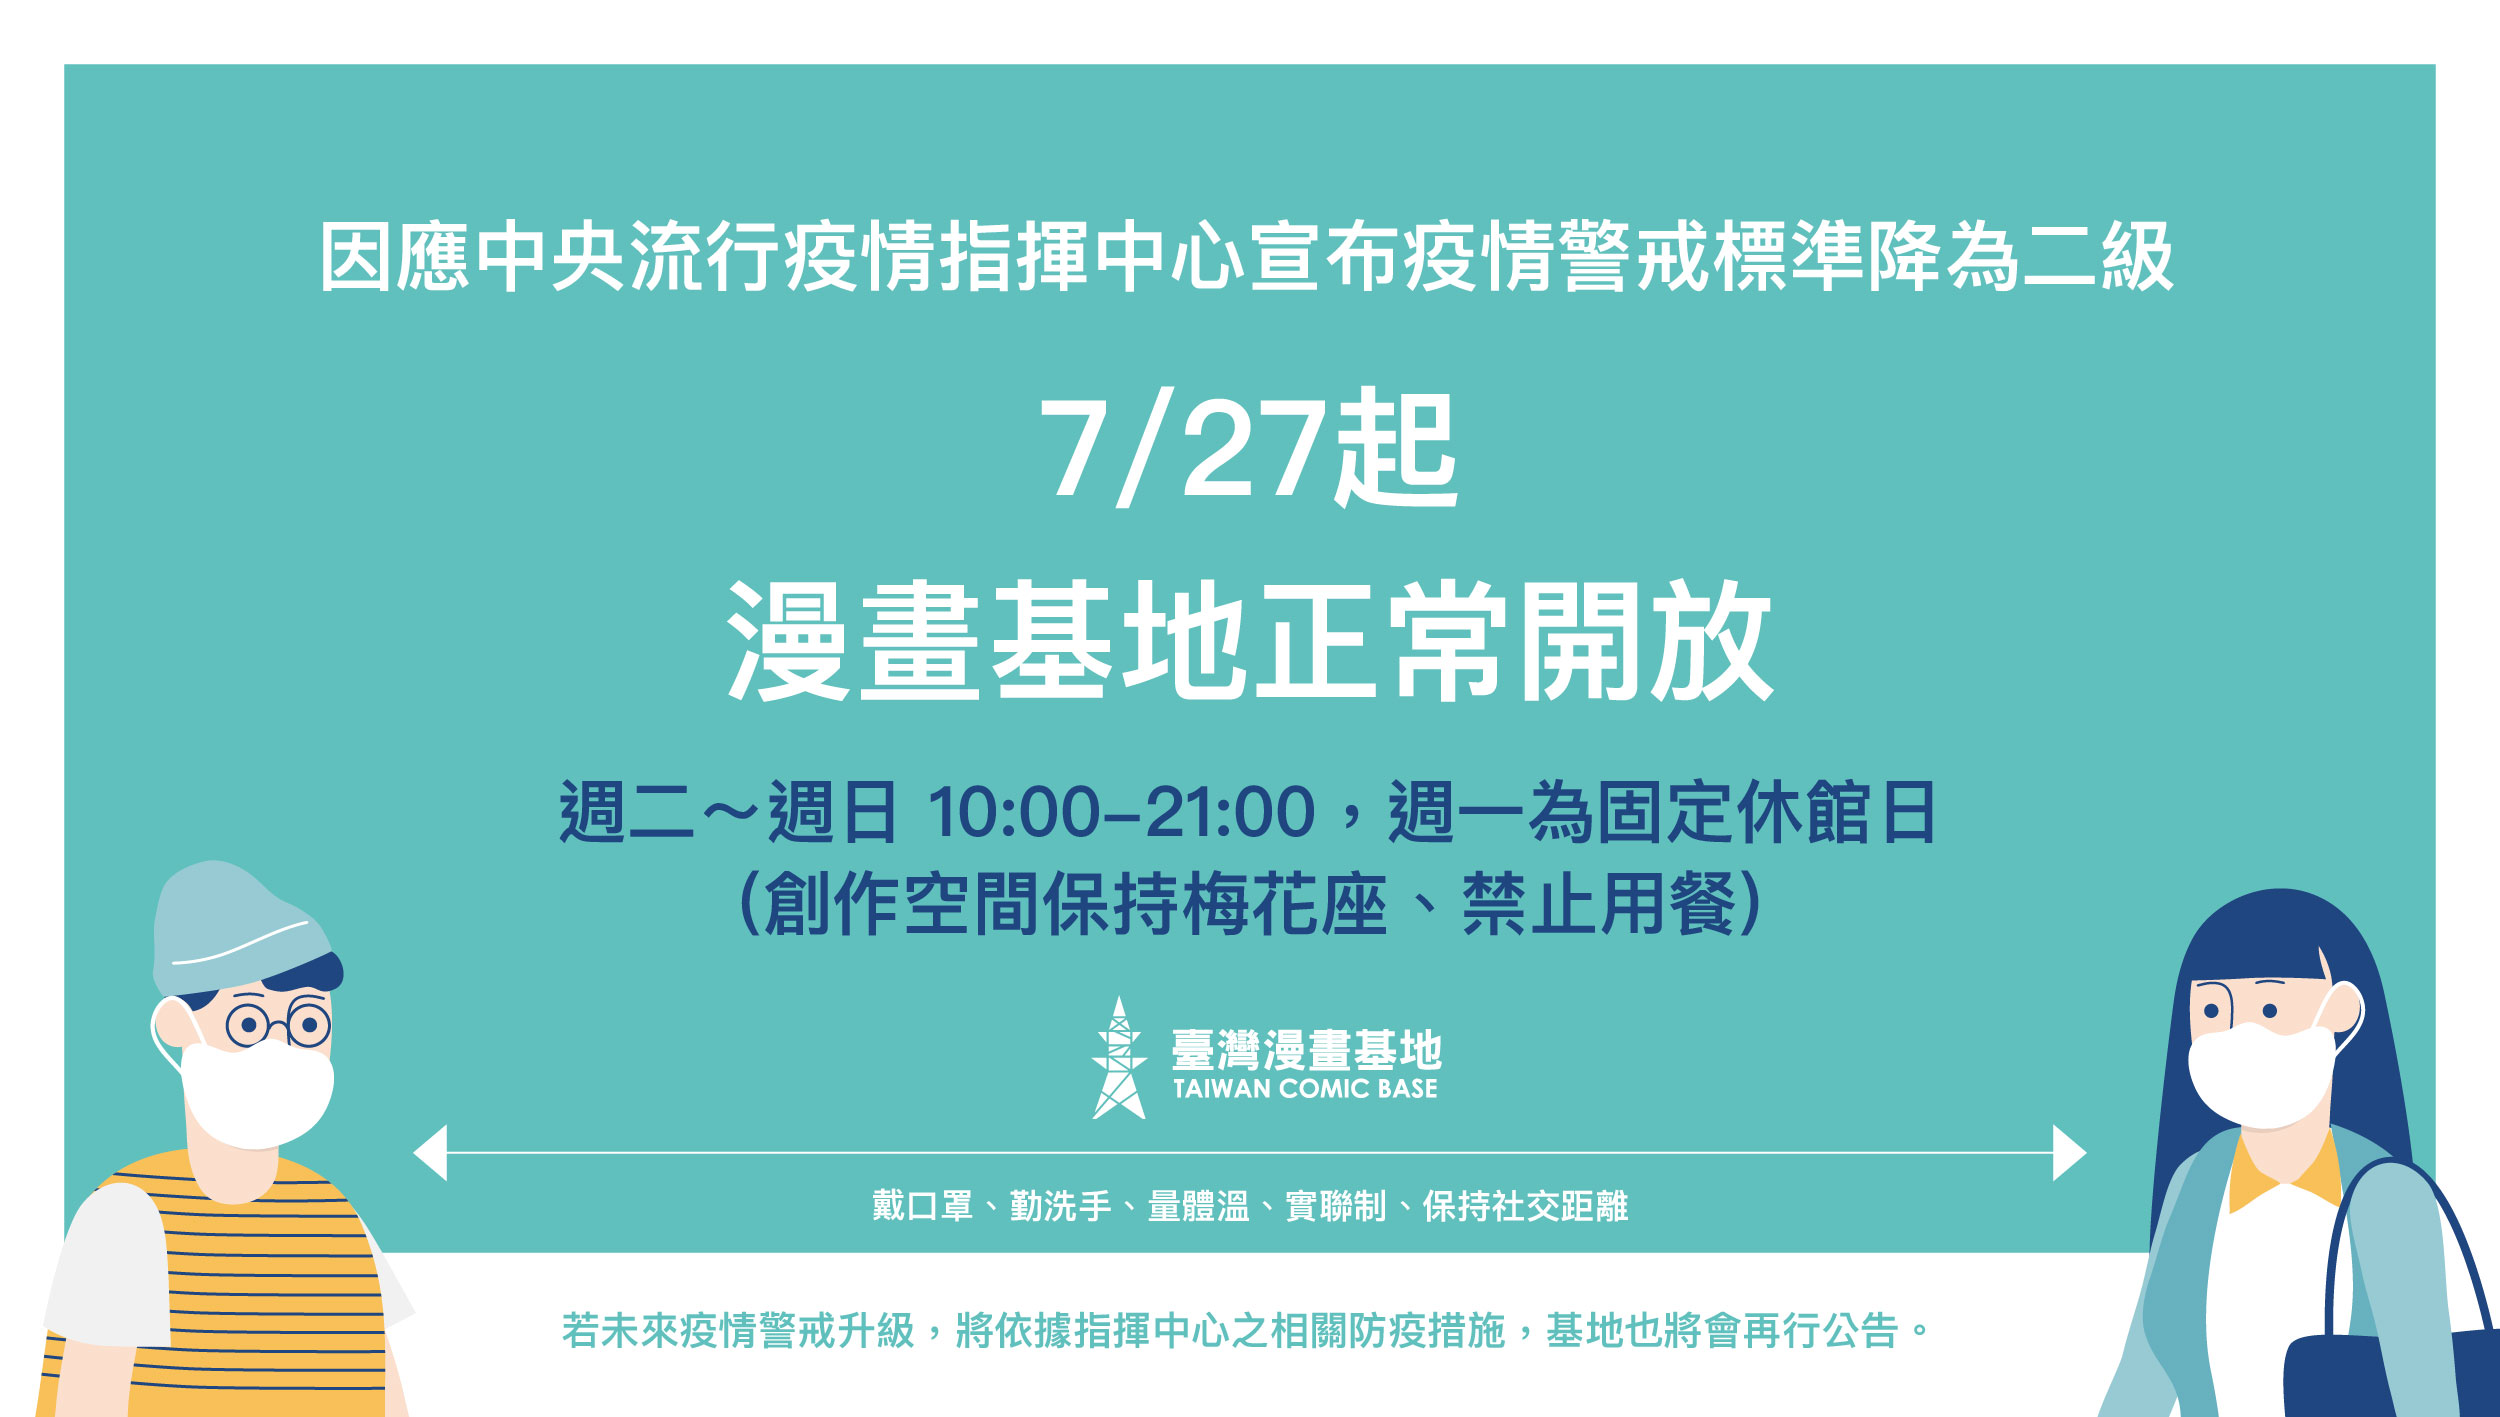 因應中央流行疫情指揮中心宣布疫情警戒標準降為二級，臺灣漫畫基地7/27起將正常開放